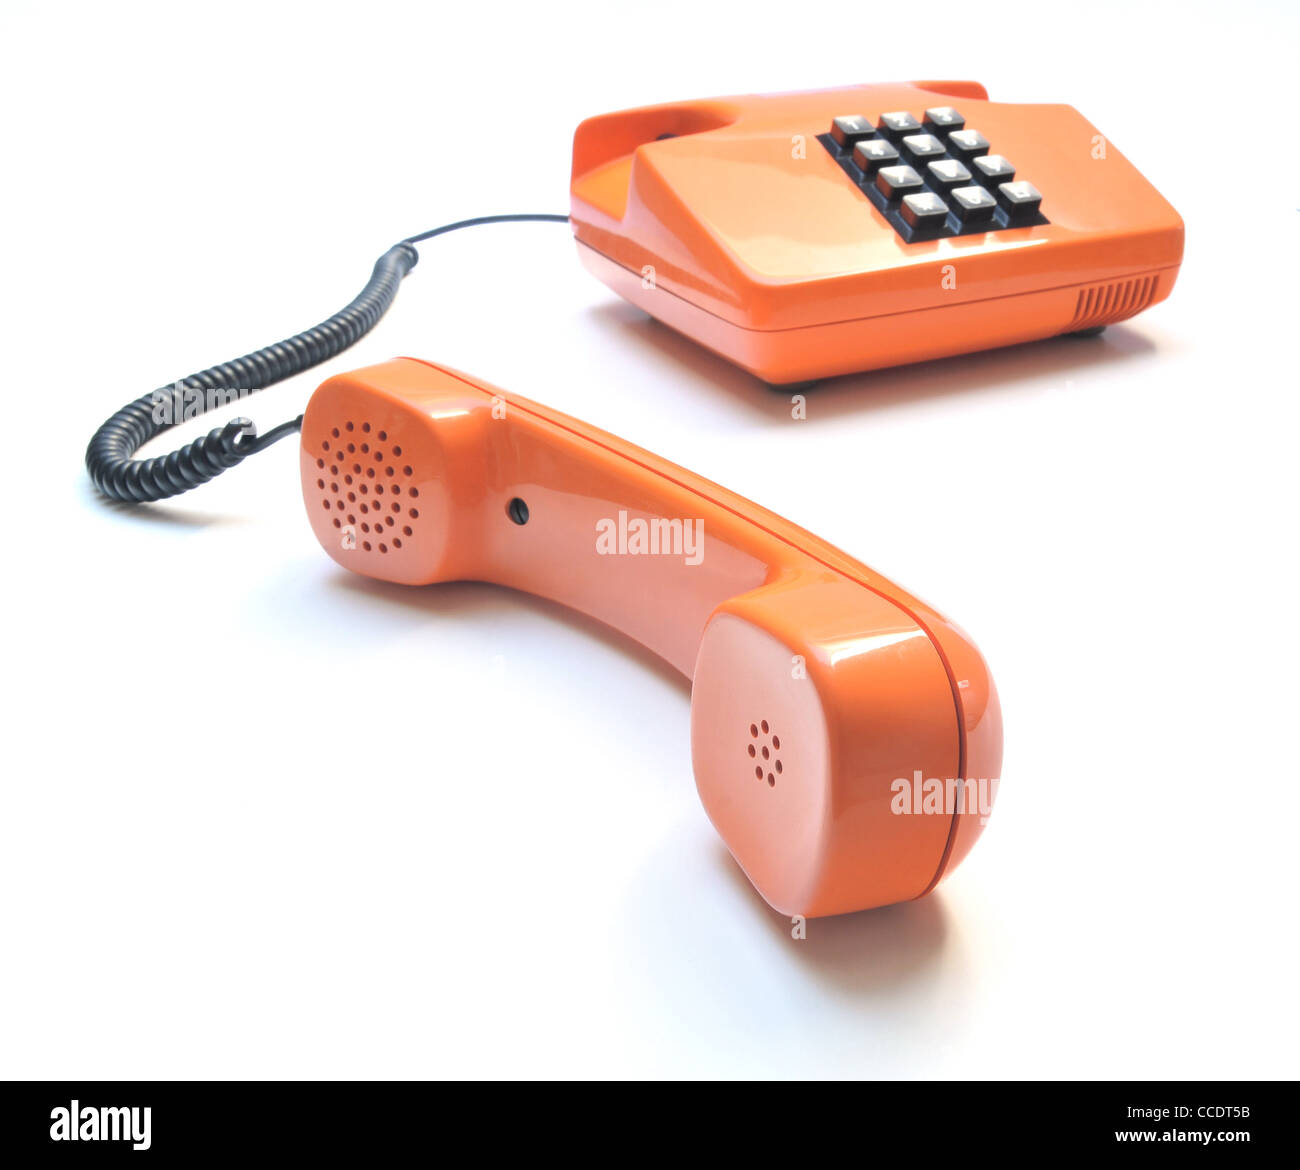 Téléphone rétro de couleur orange sur fond blanc Banque D'Images